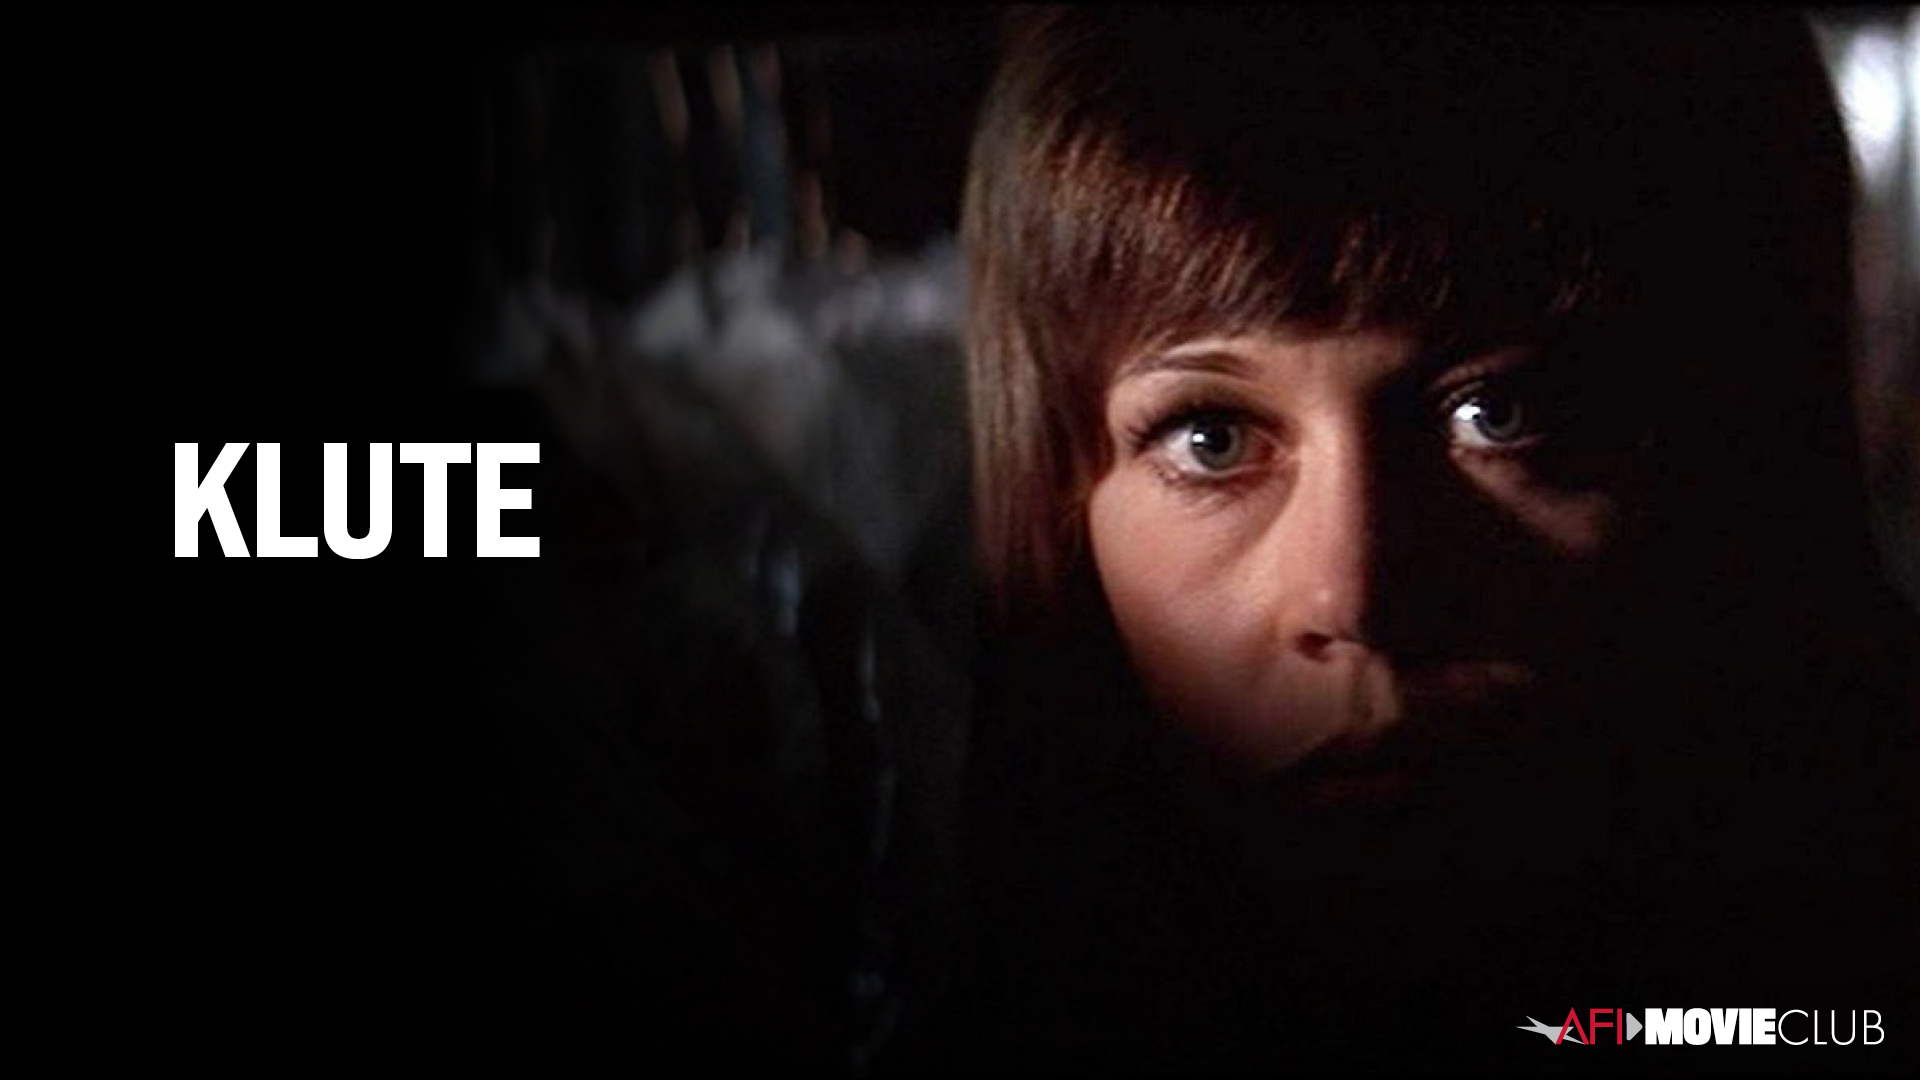 Klute Film Still - Jane Fonda